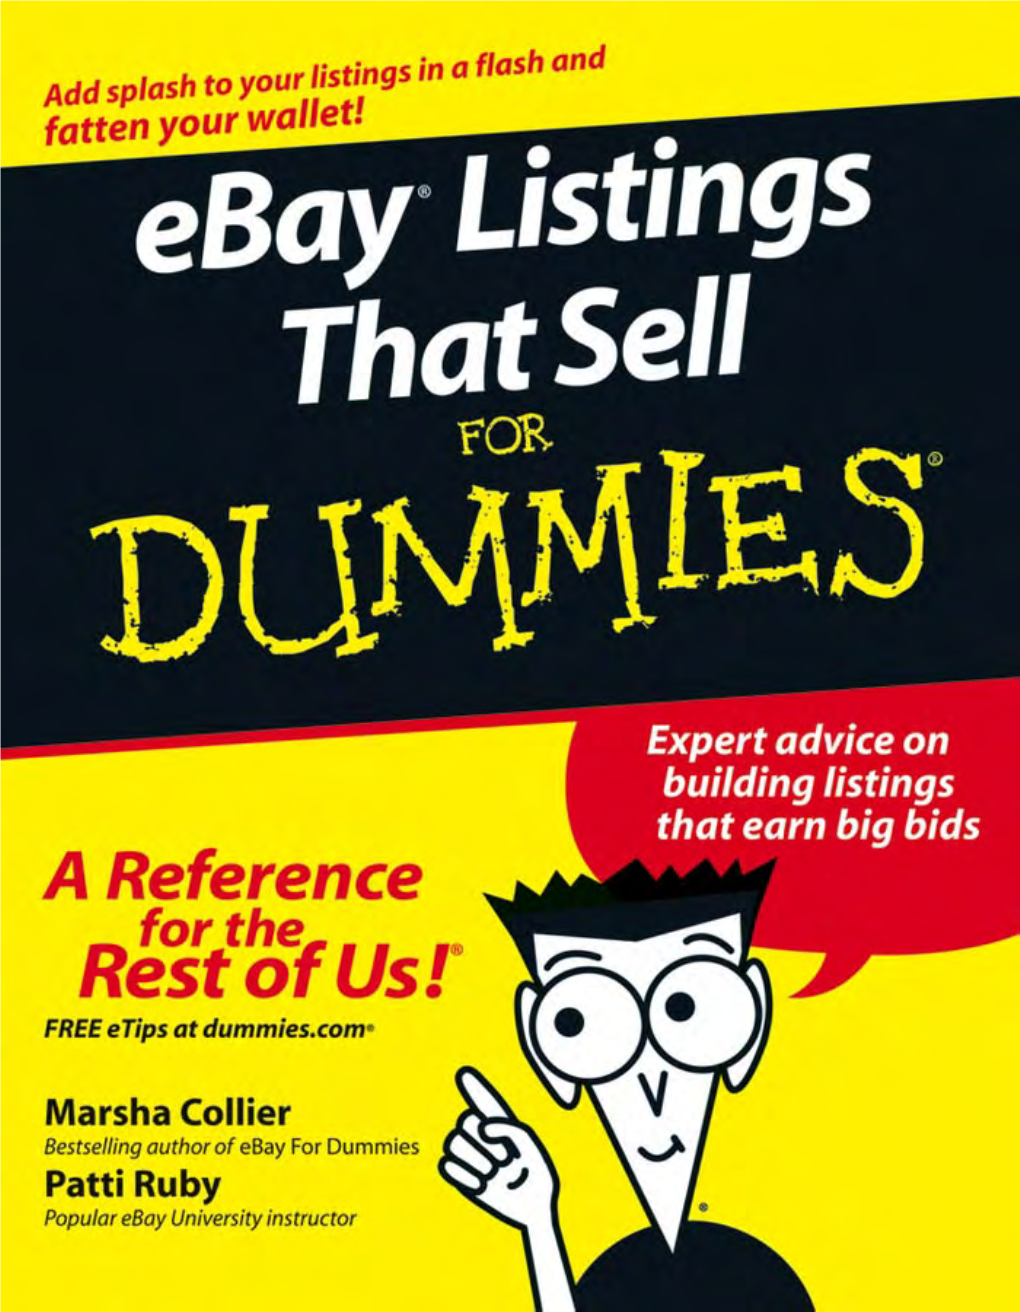 Ebay Listings That Sell for Dummies.Pdf